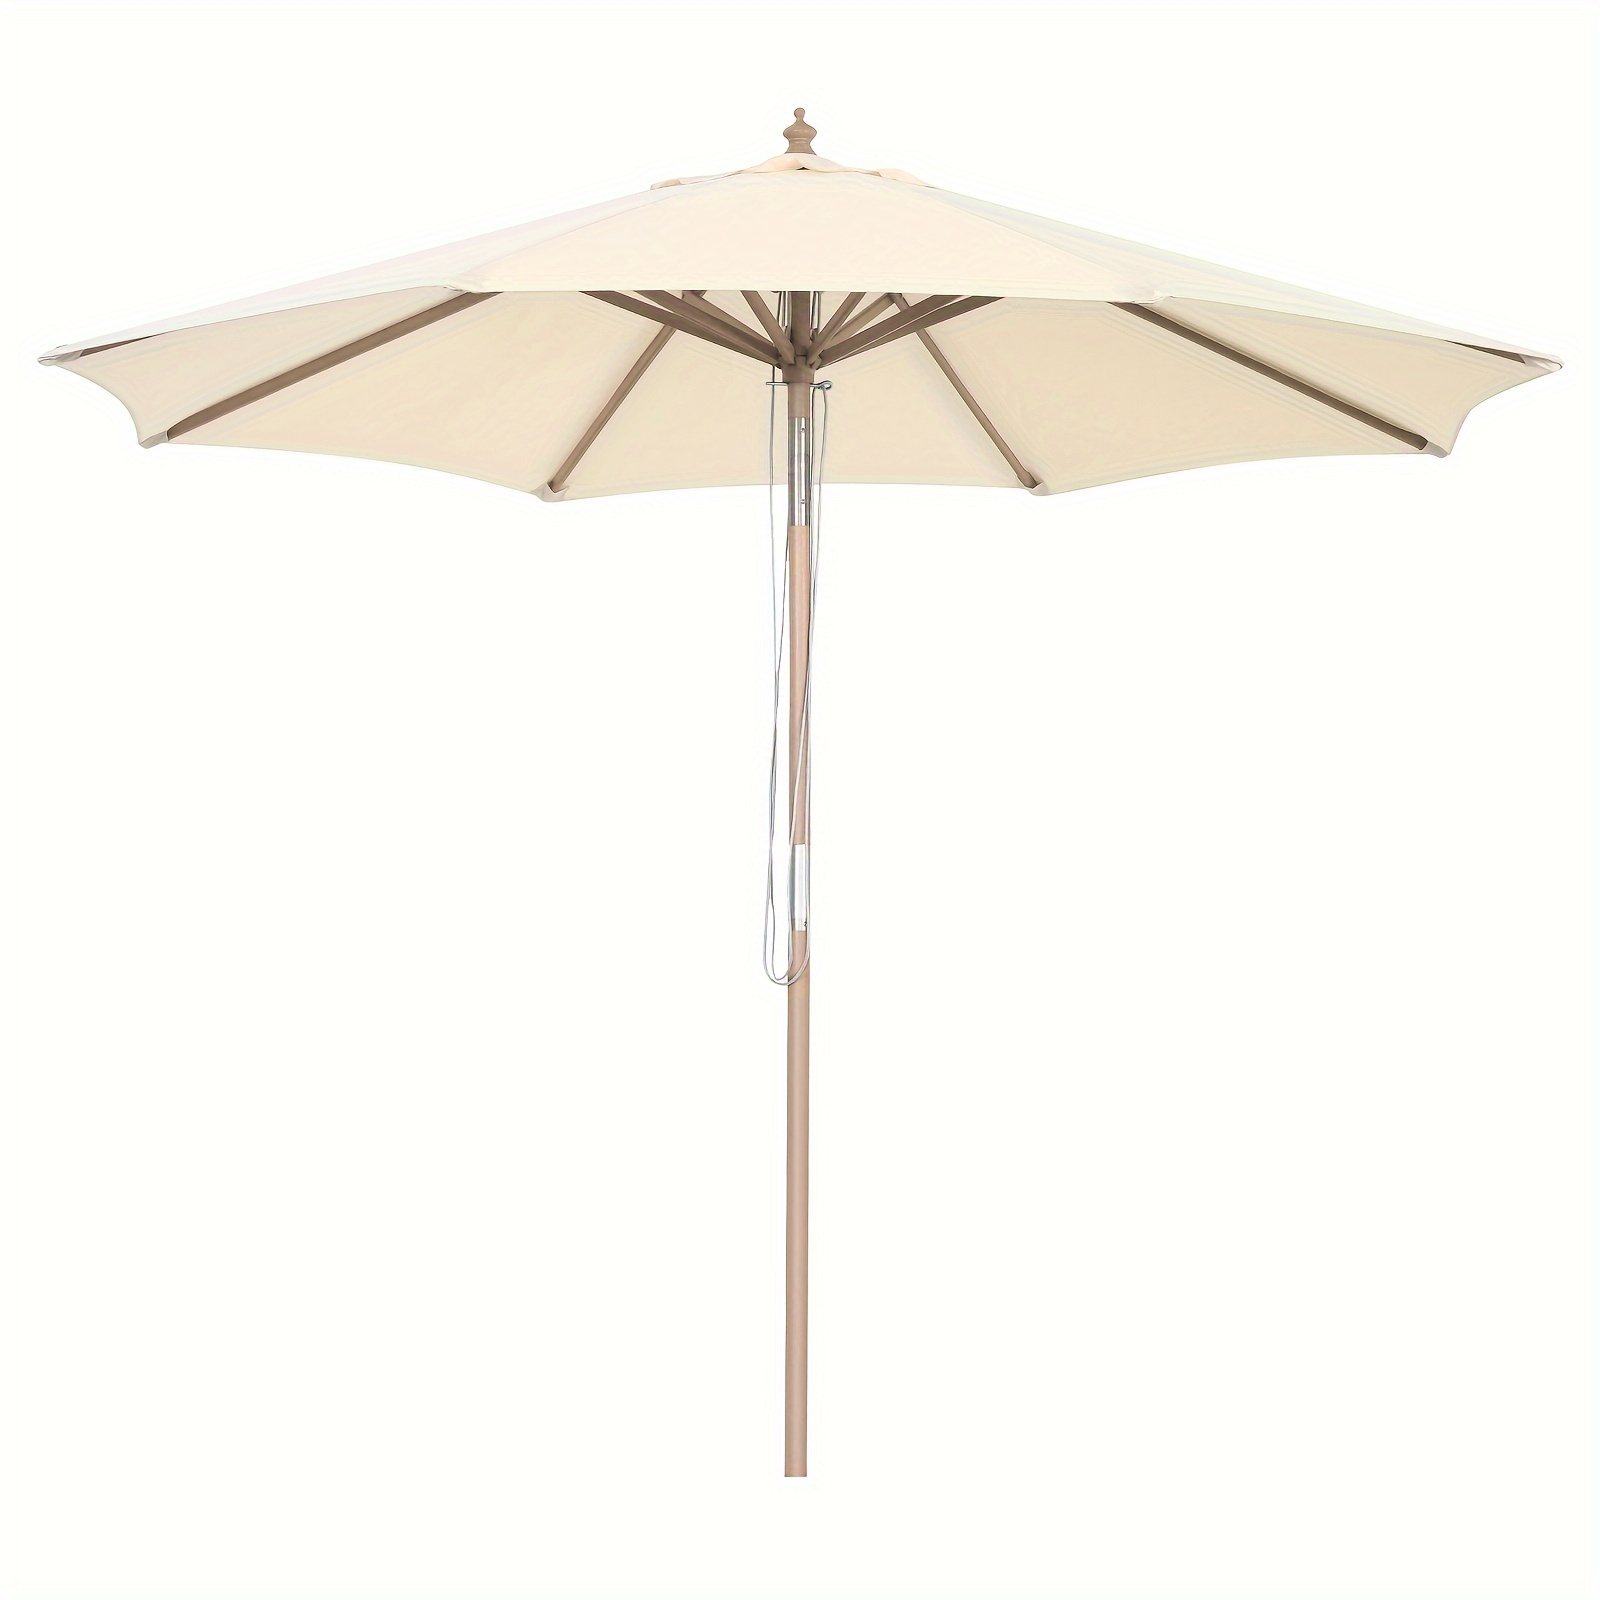 

Parasol en bois, parasol de jardin avec 8 baleines, parasol de marché inclinable, parasol de terrasse beige, système de câble de parasol en bois pour jardin, plage, piscine et café (270 cm x 248 cm)